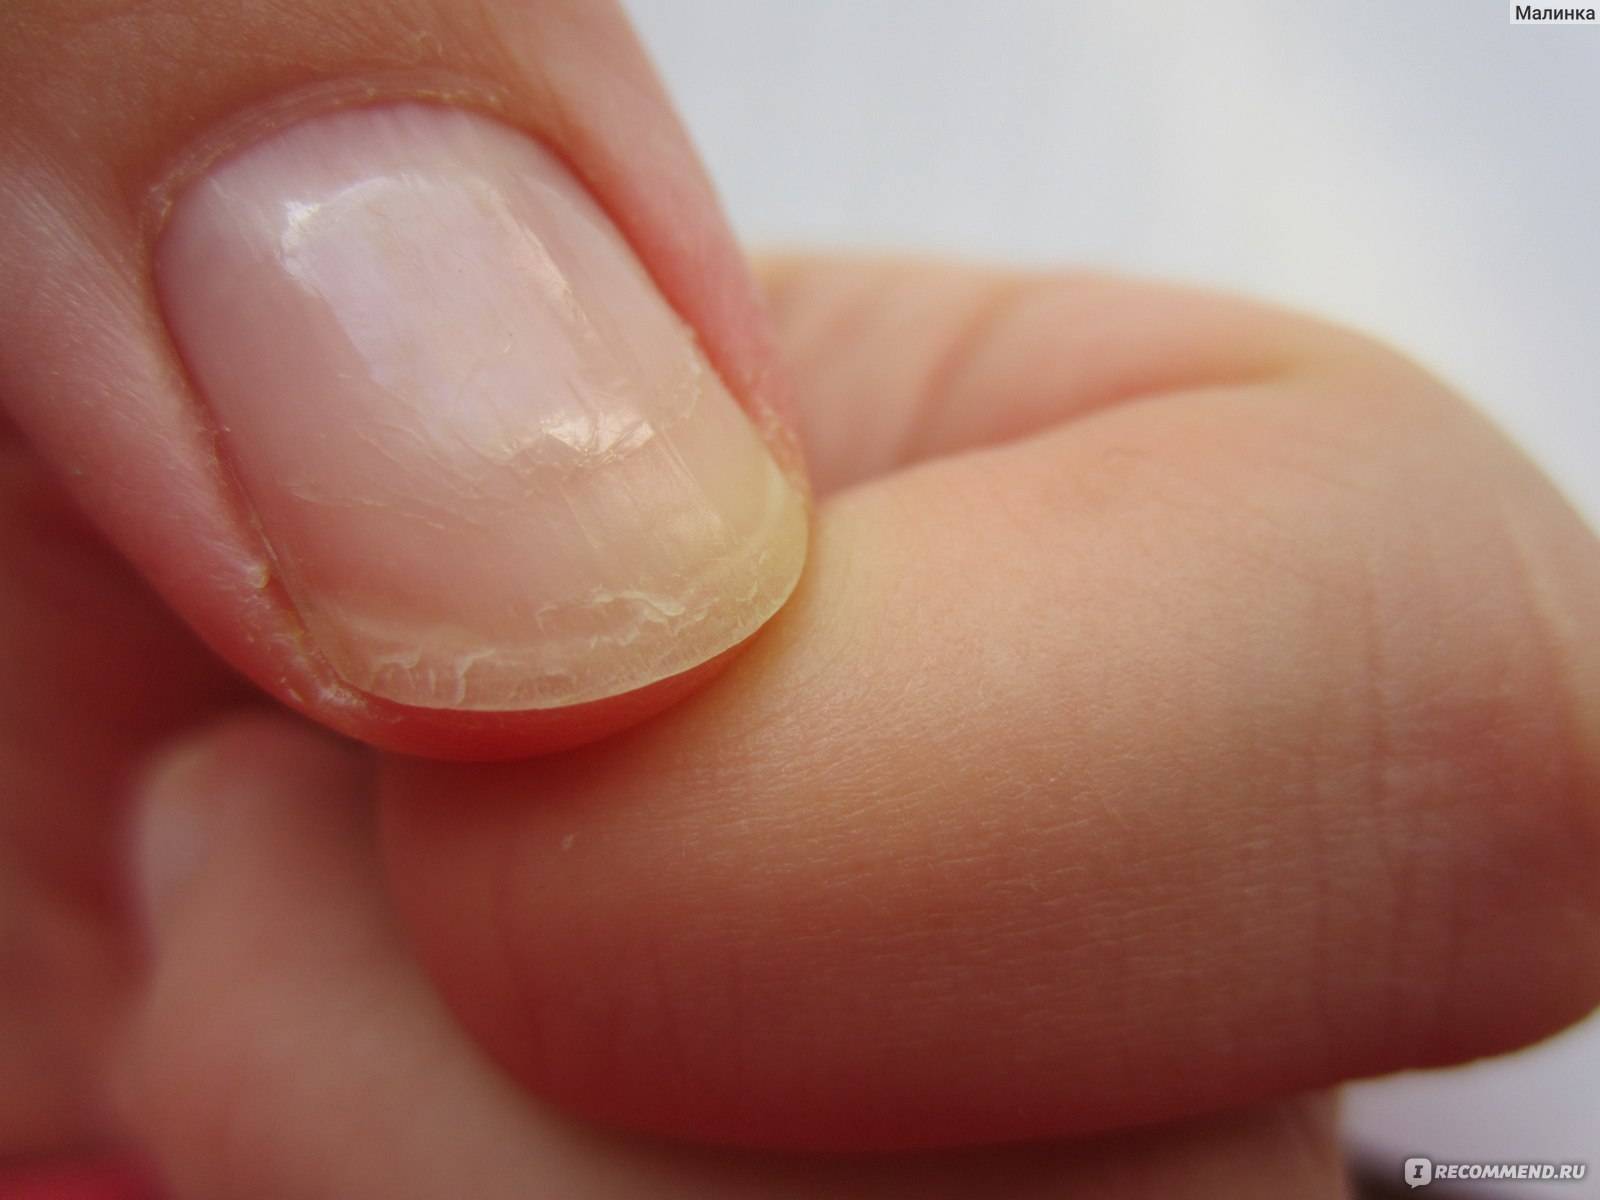 Ногти тонкие мягкие что делать. Онихошизис ногтевой пластины.